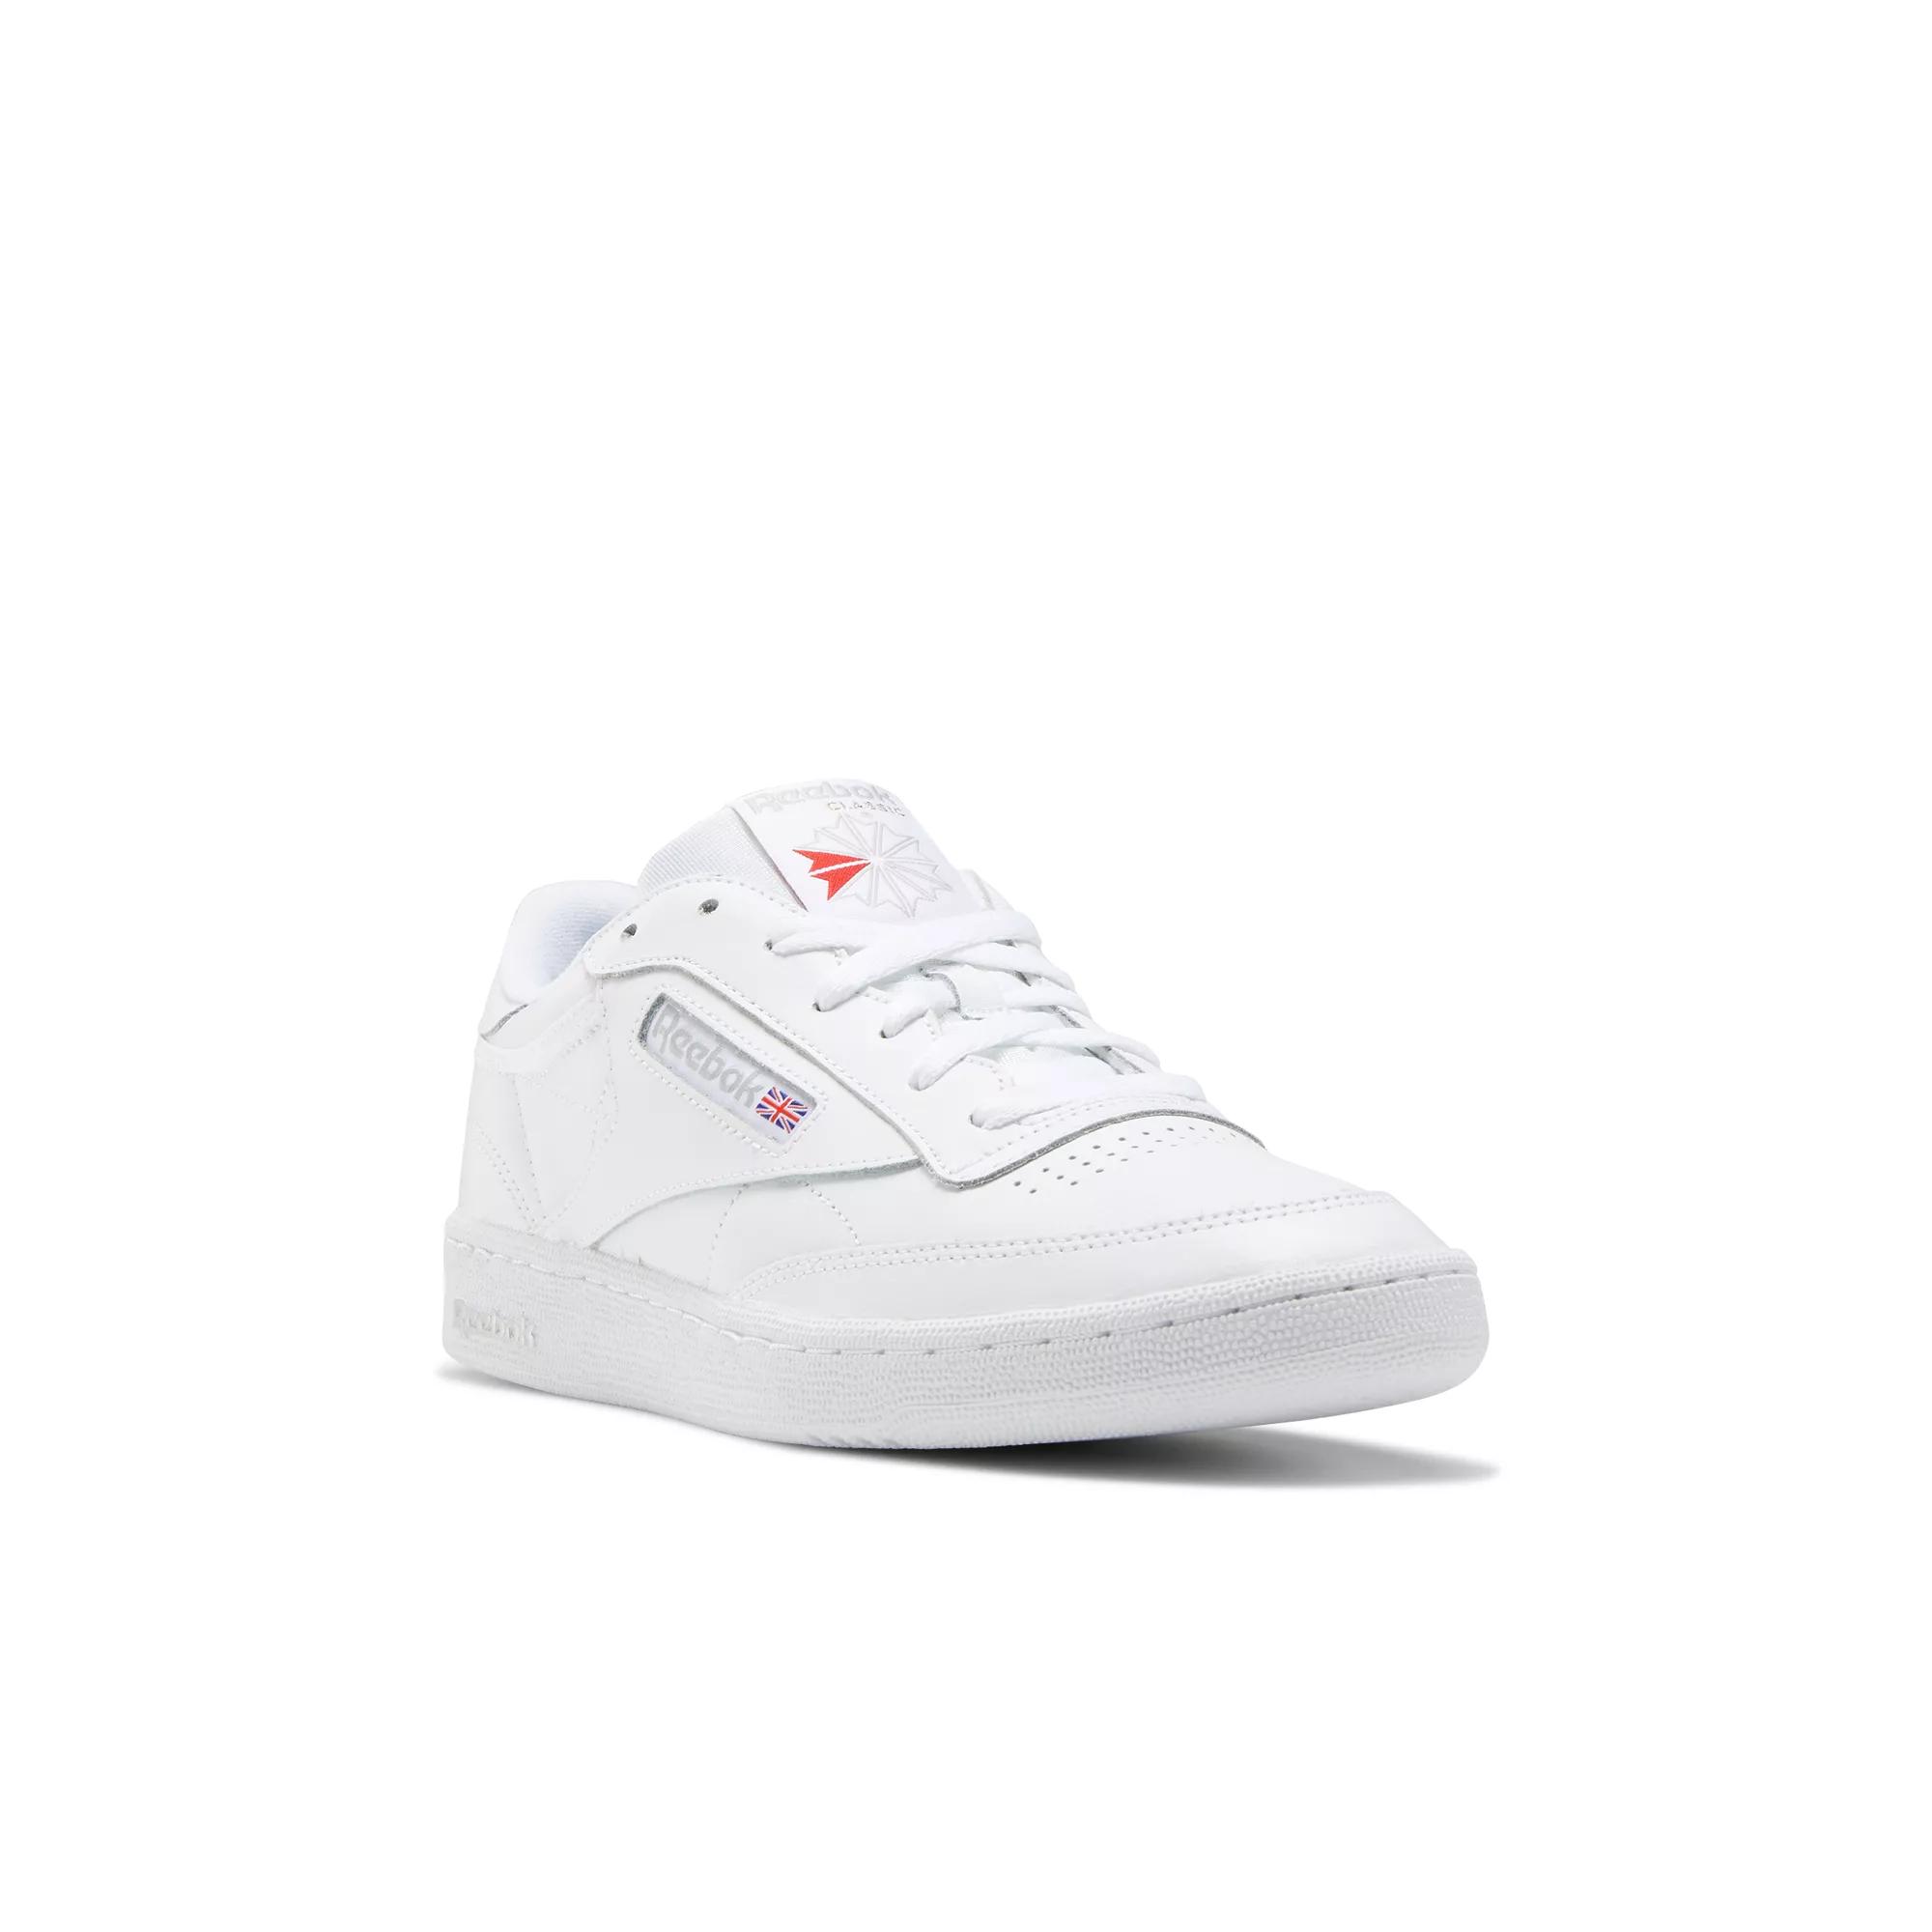 C 85 Shoes White / Grey | Reebok